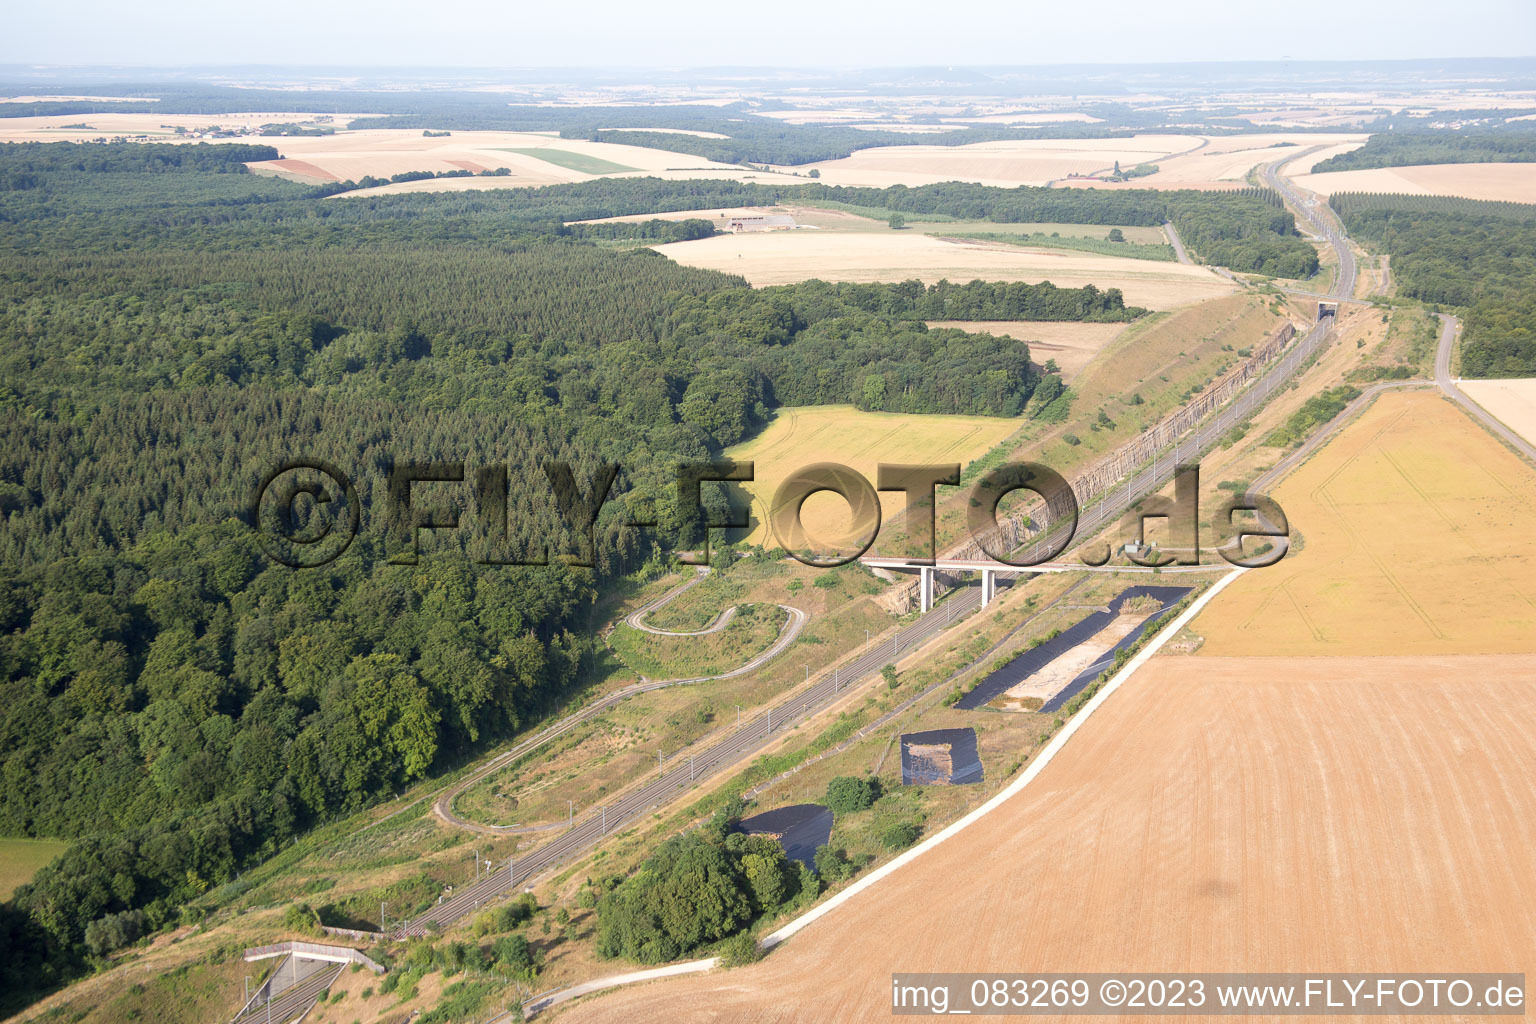 Prény im Bundesland Meurthe-et-Moselle, Frankreich von oben gesehen